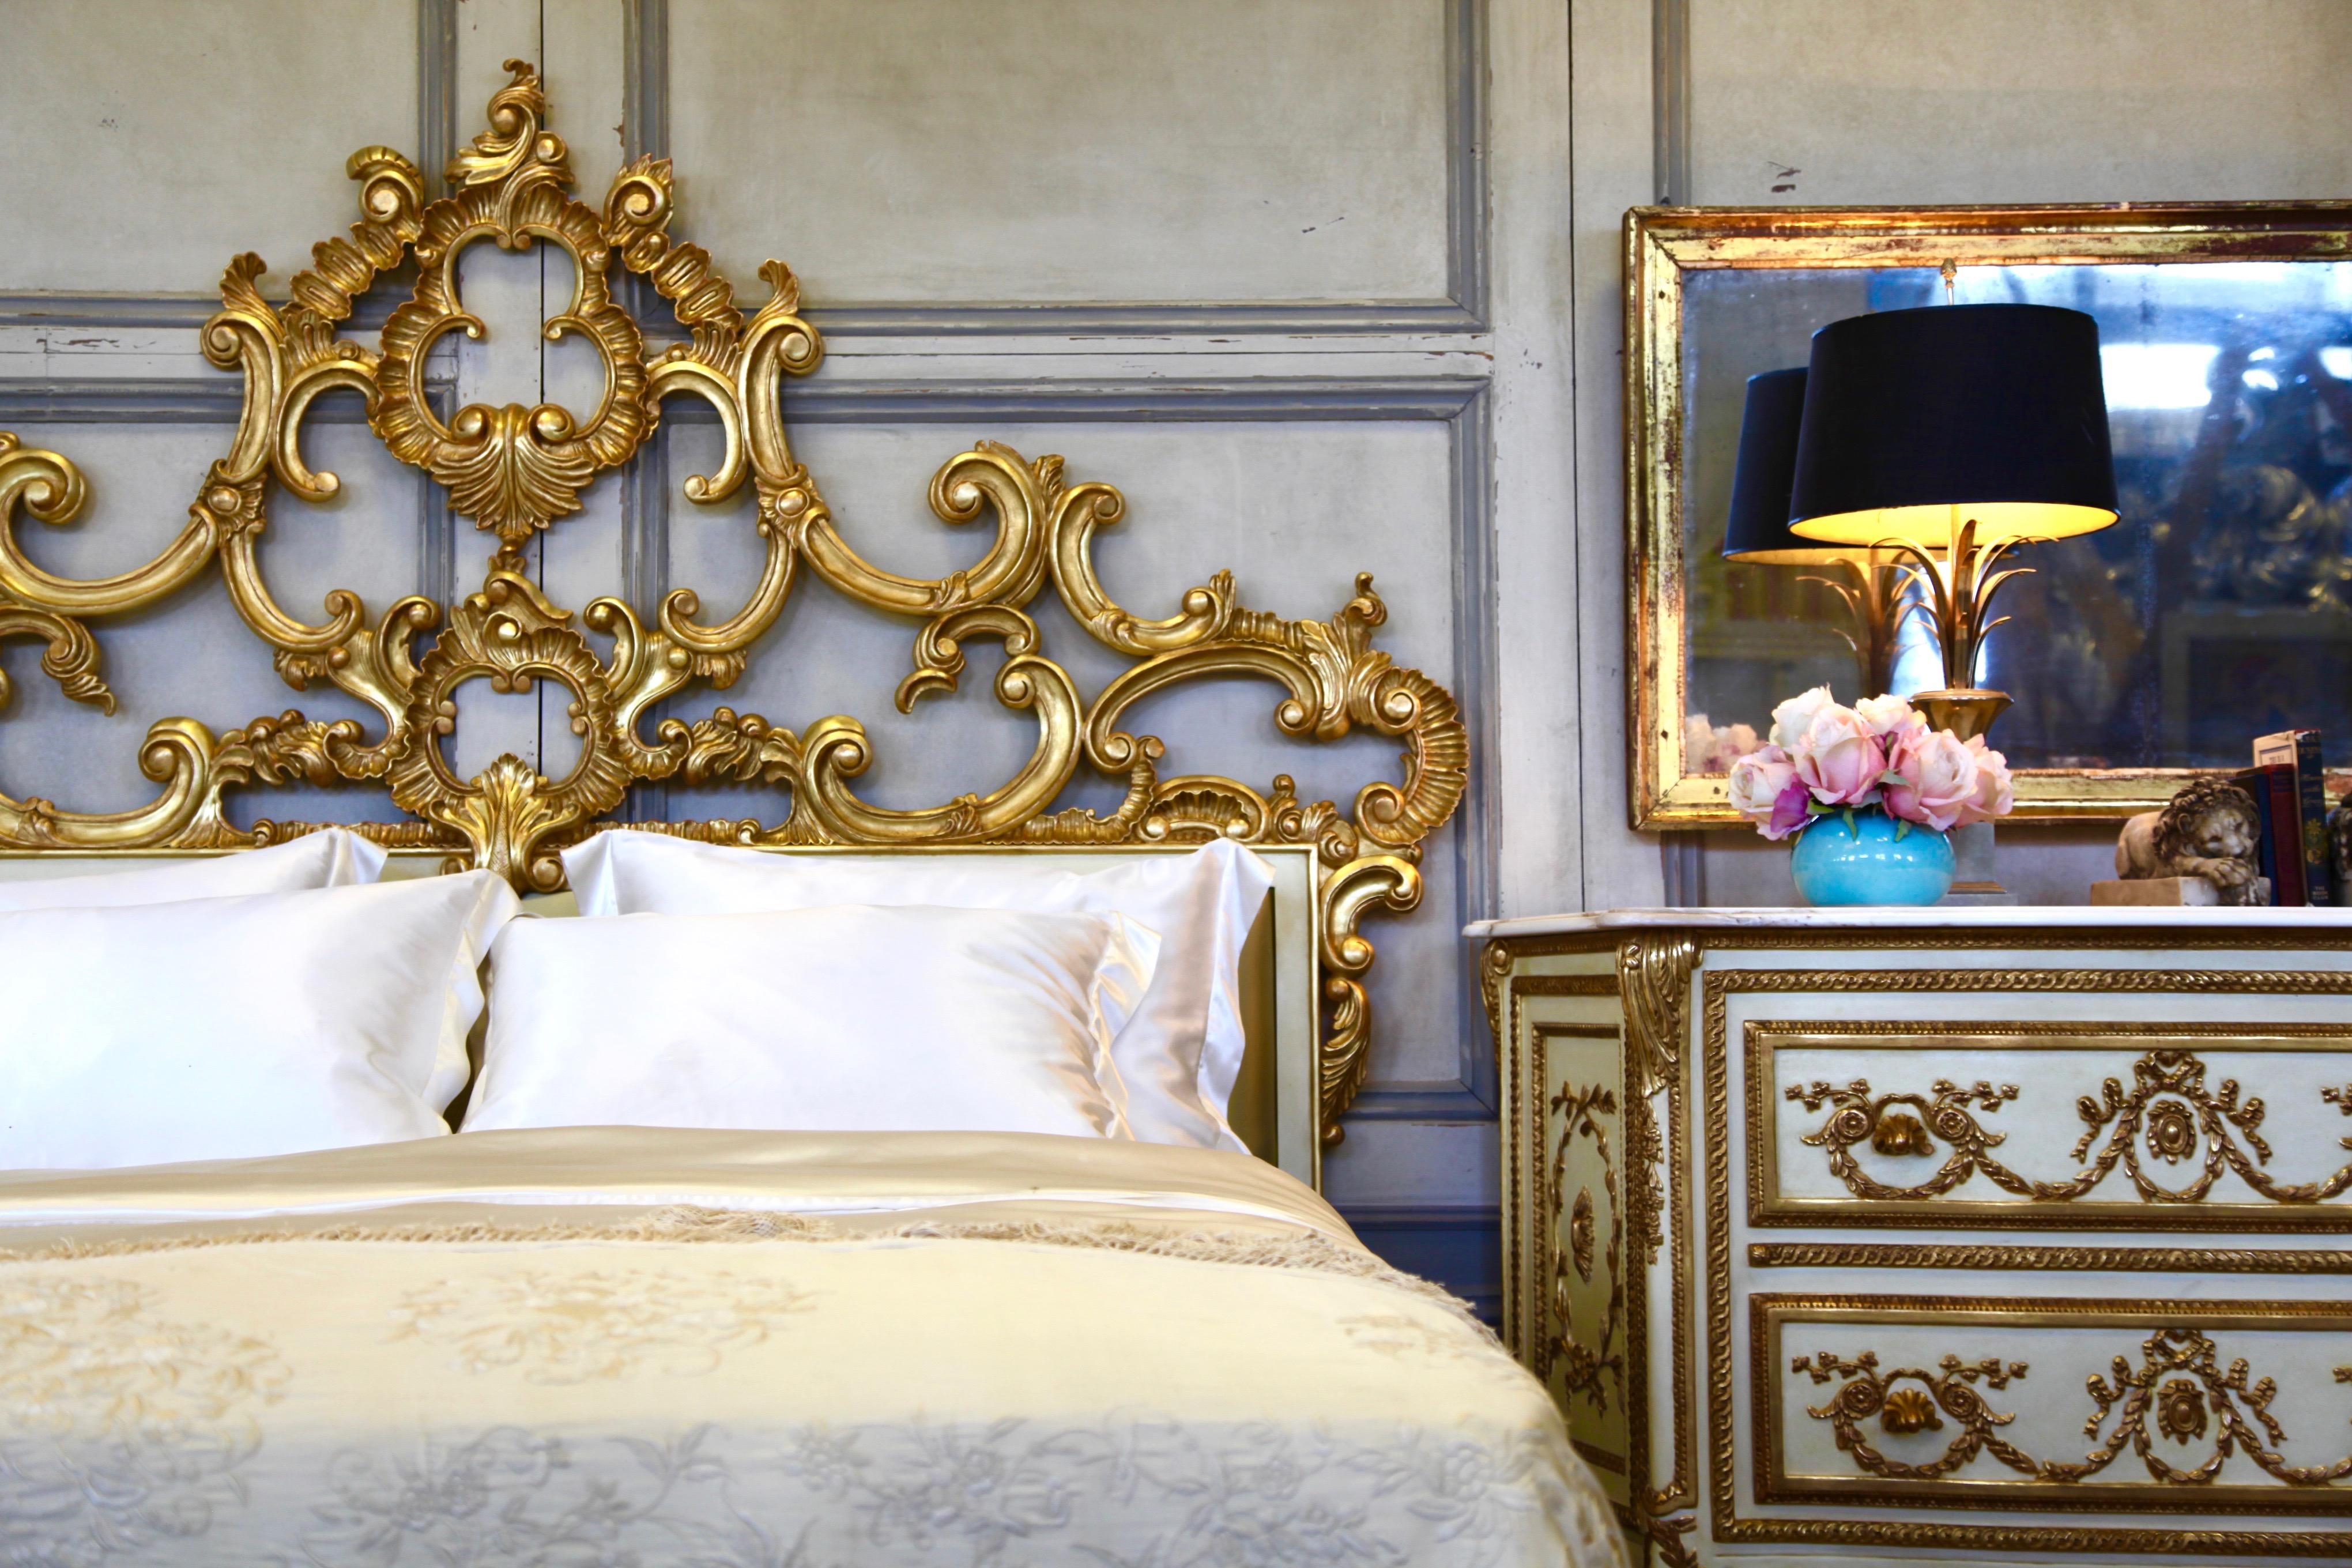 Das venezianische Bett ist ein elegantes Beispiel für feine Filigranarbeit aus der Signature Range von La Maison London. Das Design ist eine Rhapsodie aus S-Kurven, Schnörkeln, stilisierten Akanthusblättern und Muschelmotiven, die sich zu einem